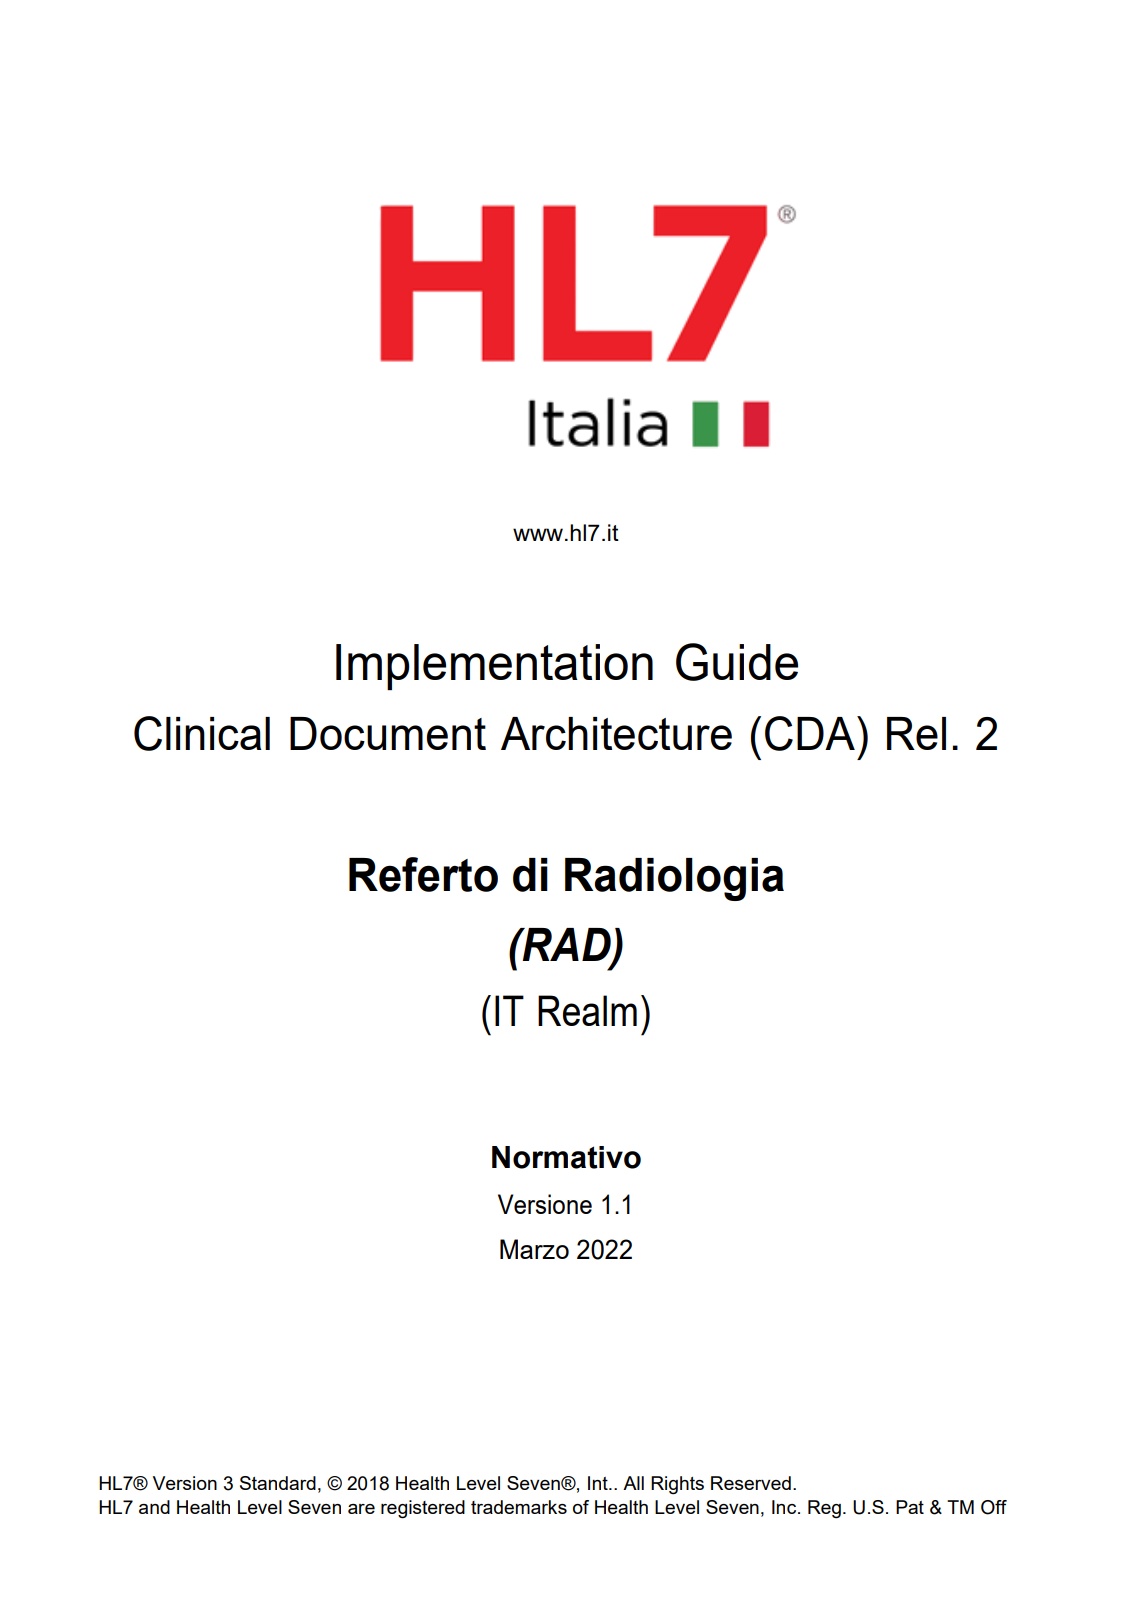 HL7 Italia-Implementation Guide CDA2 Referto di Radiologia (RAD) v1.1